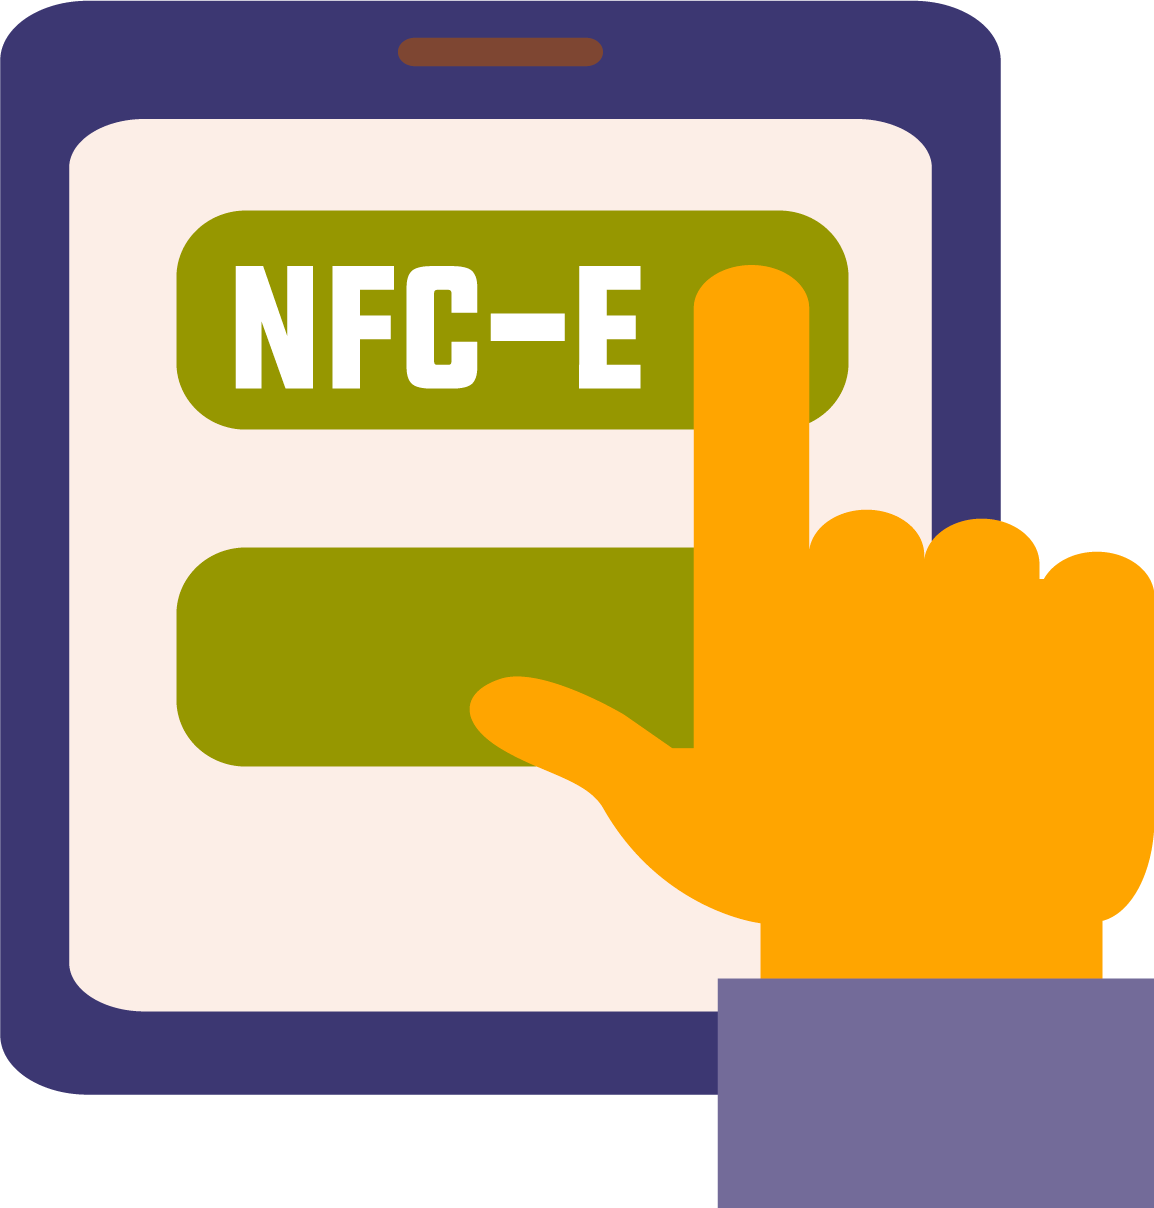 Vantagens da NFC-e